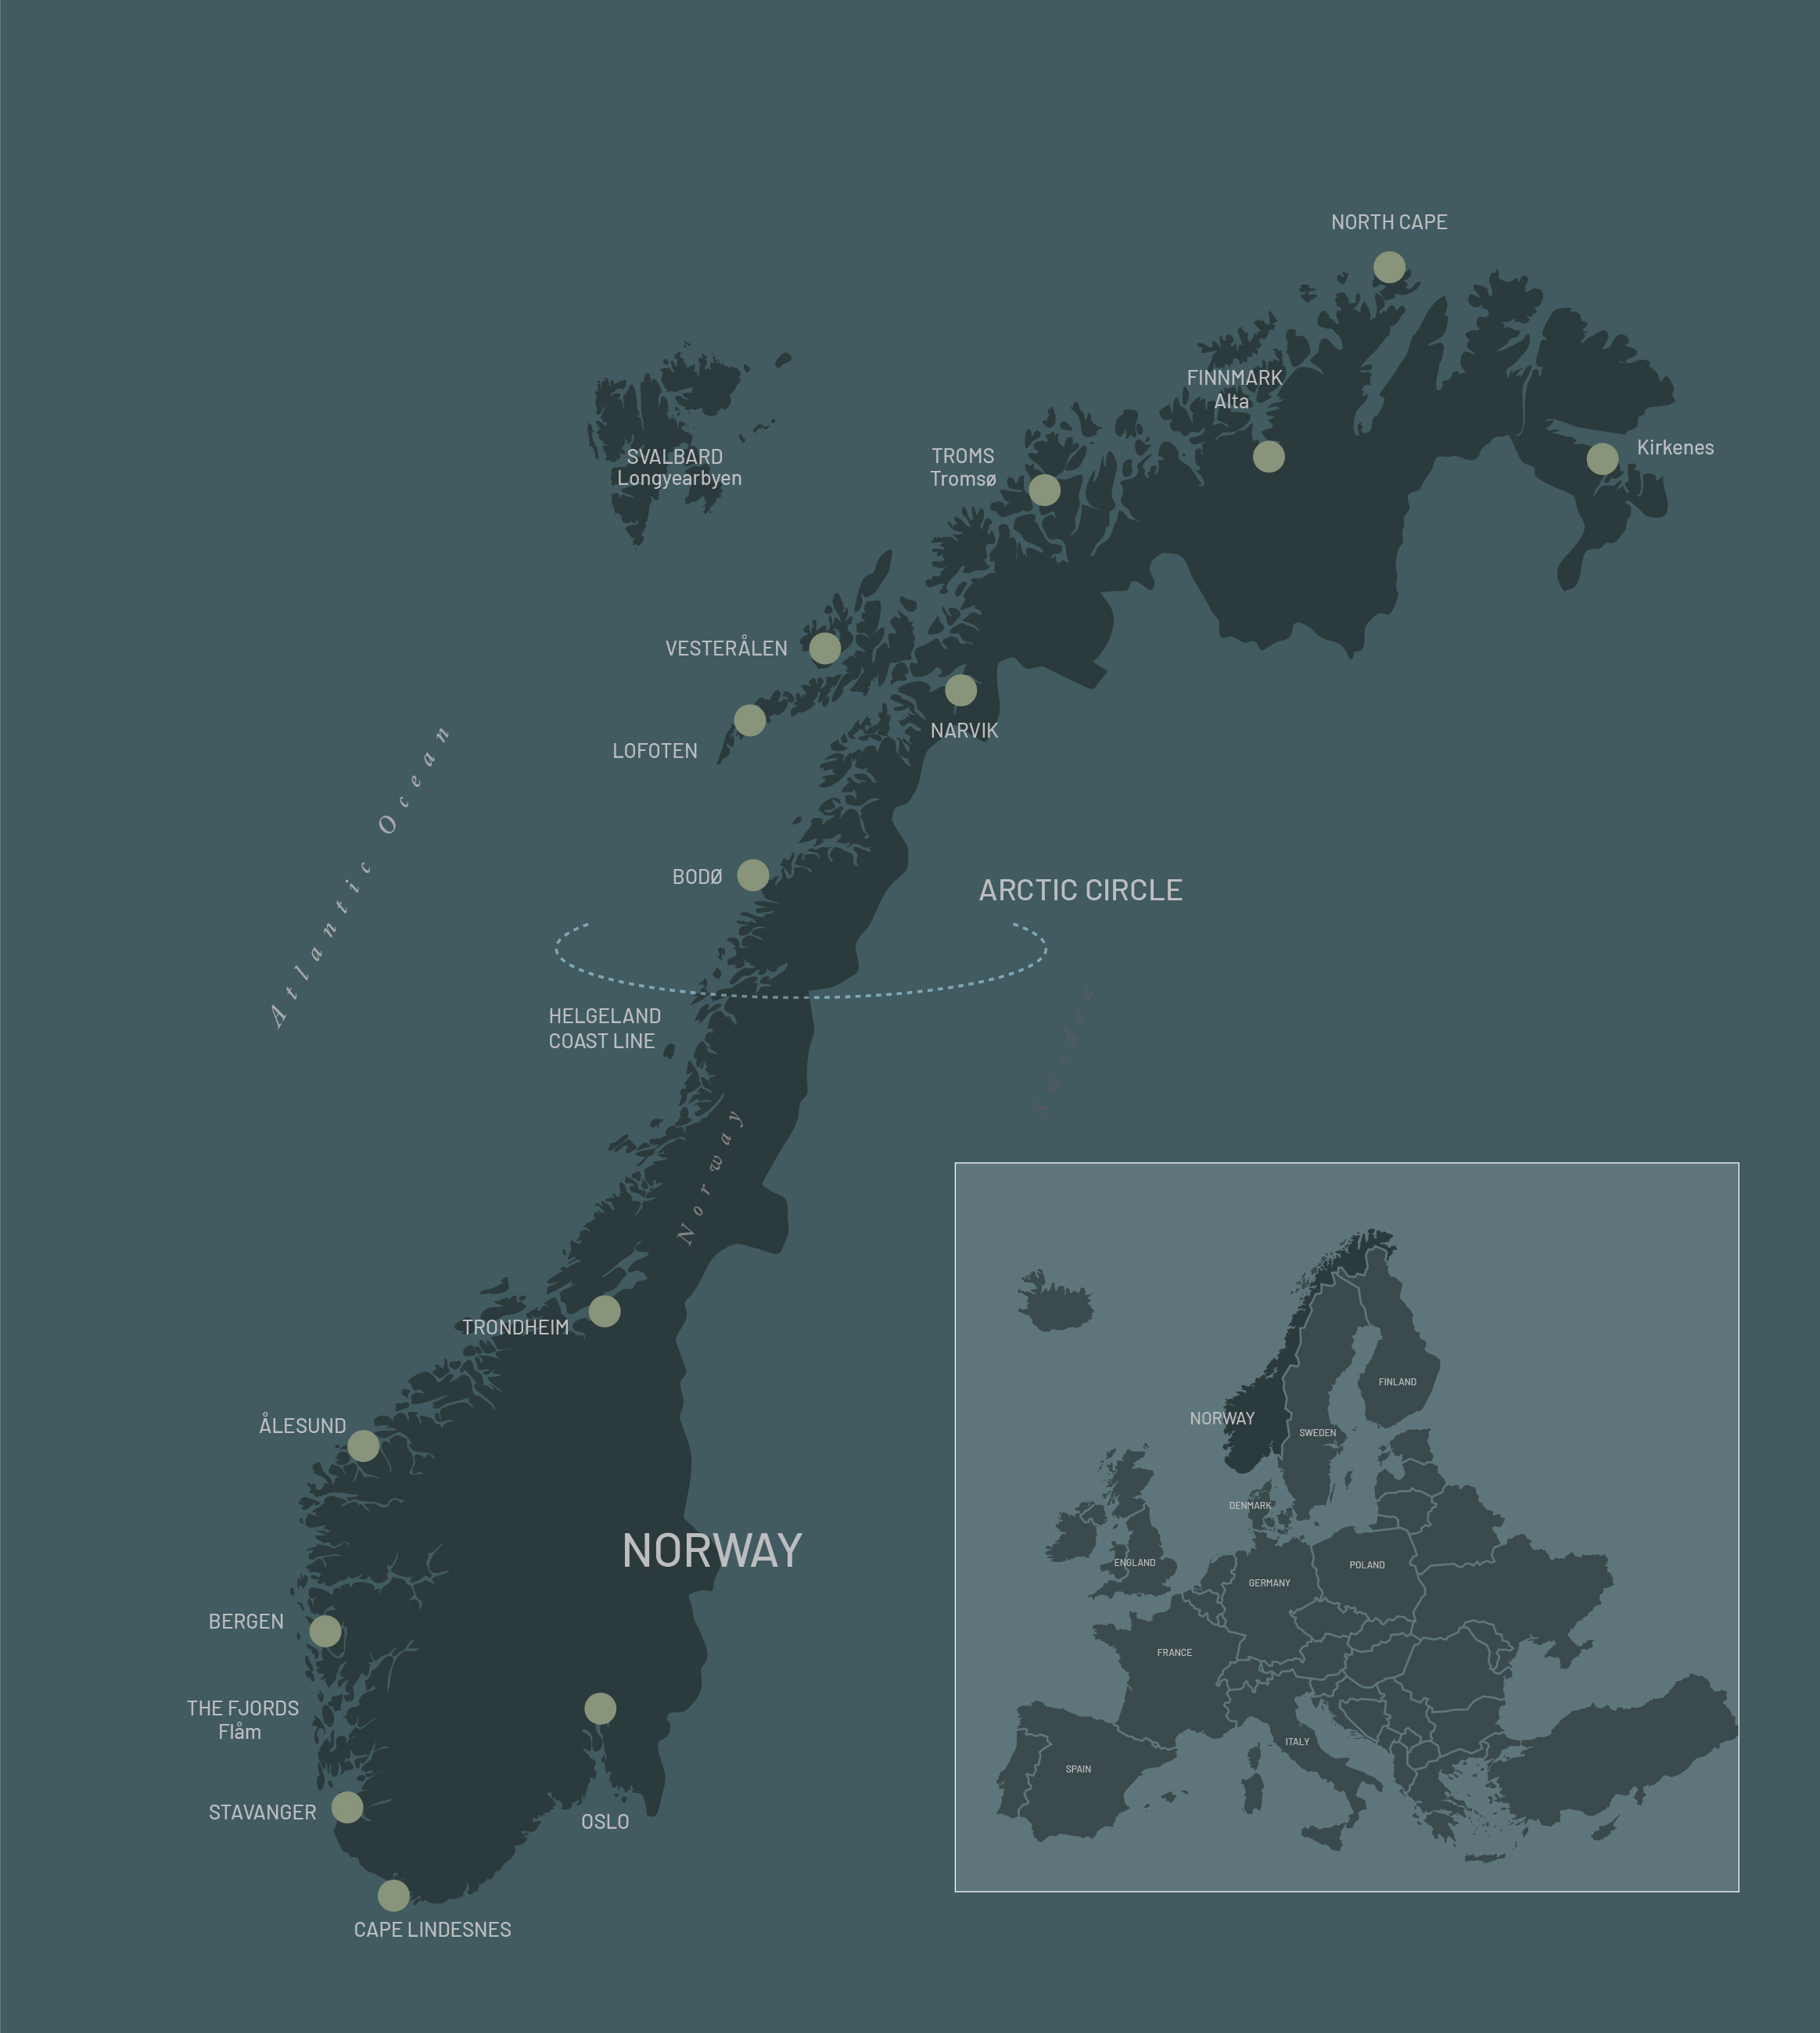 Opplev Nord-Norge på sitt beste! – Norwegian Adventure Company